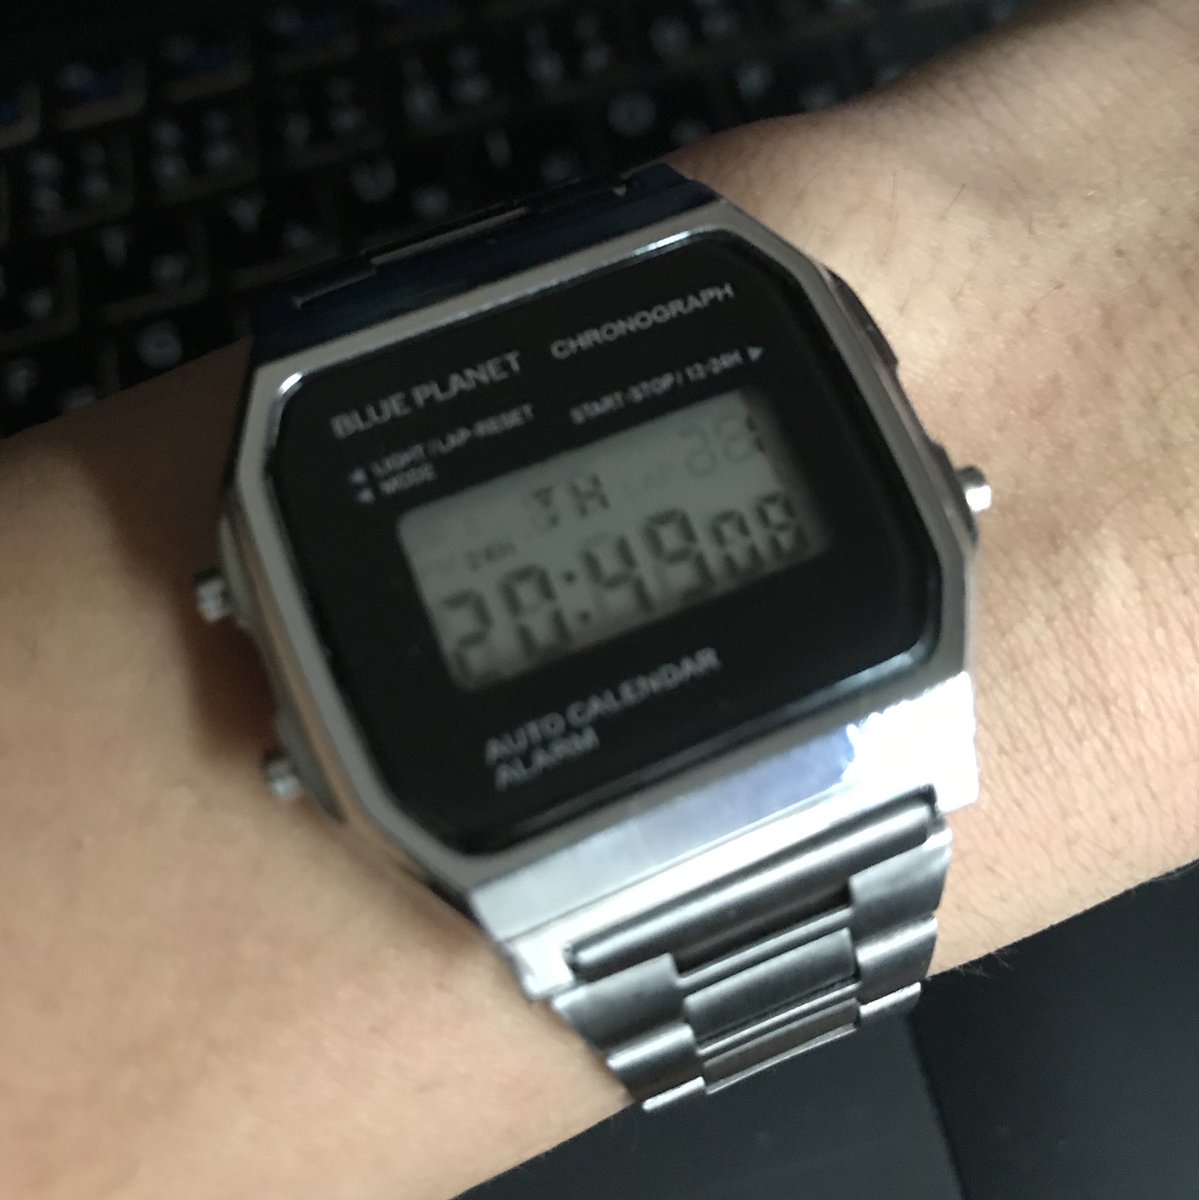 test ツイッターメディア - 今使ってる時計を見て、大概のやつはこんな勘違いをしてくれる。

1. Apple Watchかと思う！
              ↓
2. 違う、チプカシかな？
              ↓
3. ブルプラ、つまりチープチャイナだ
#ダイソー #BLUEPLANET https://t.co/AxCP6t4jTM